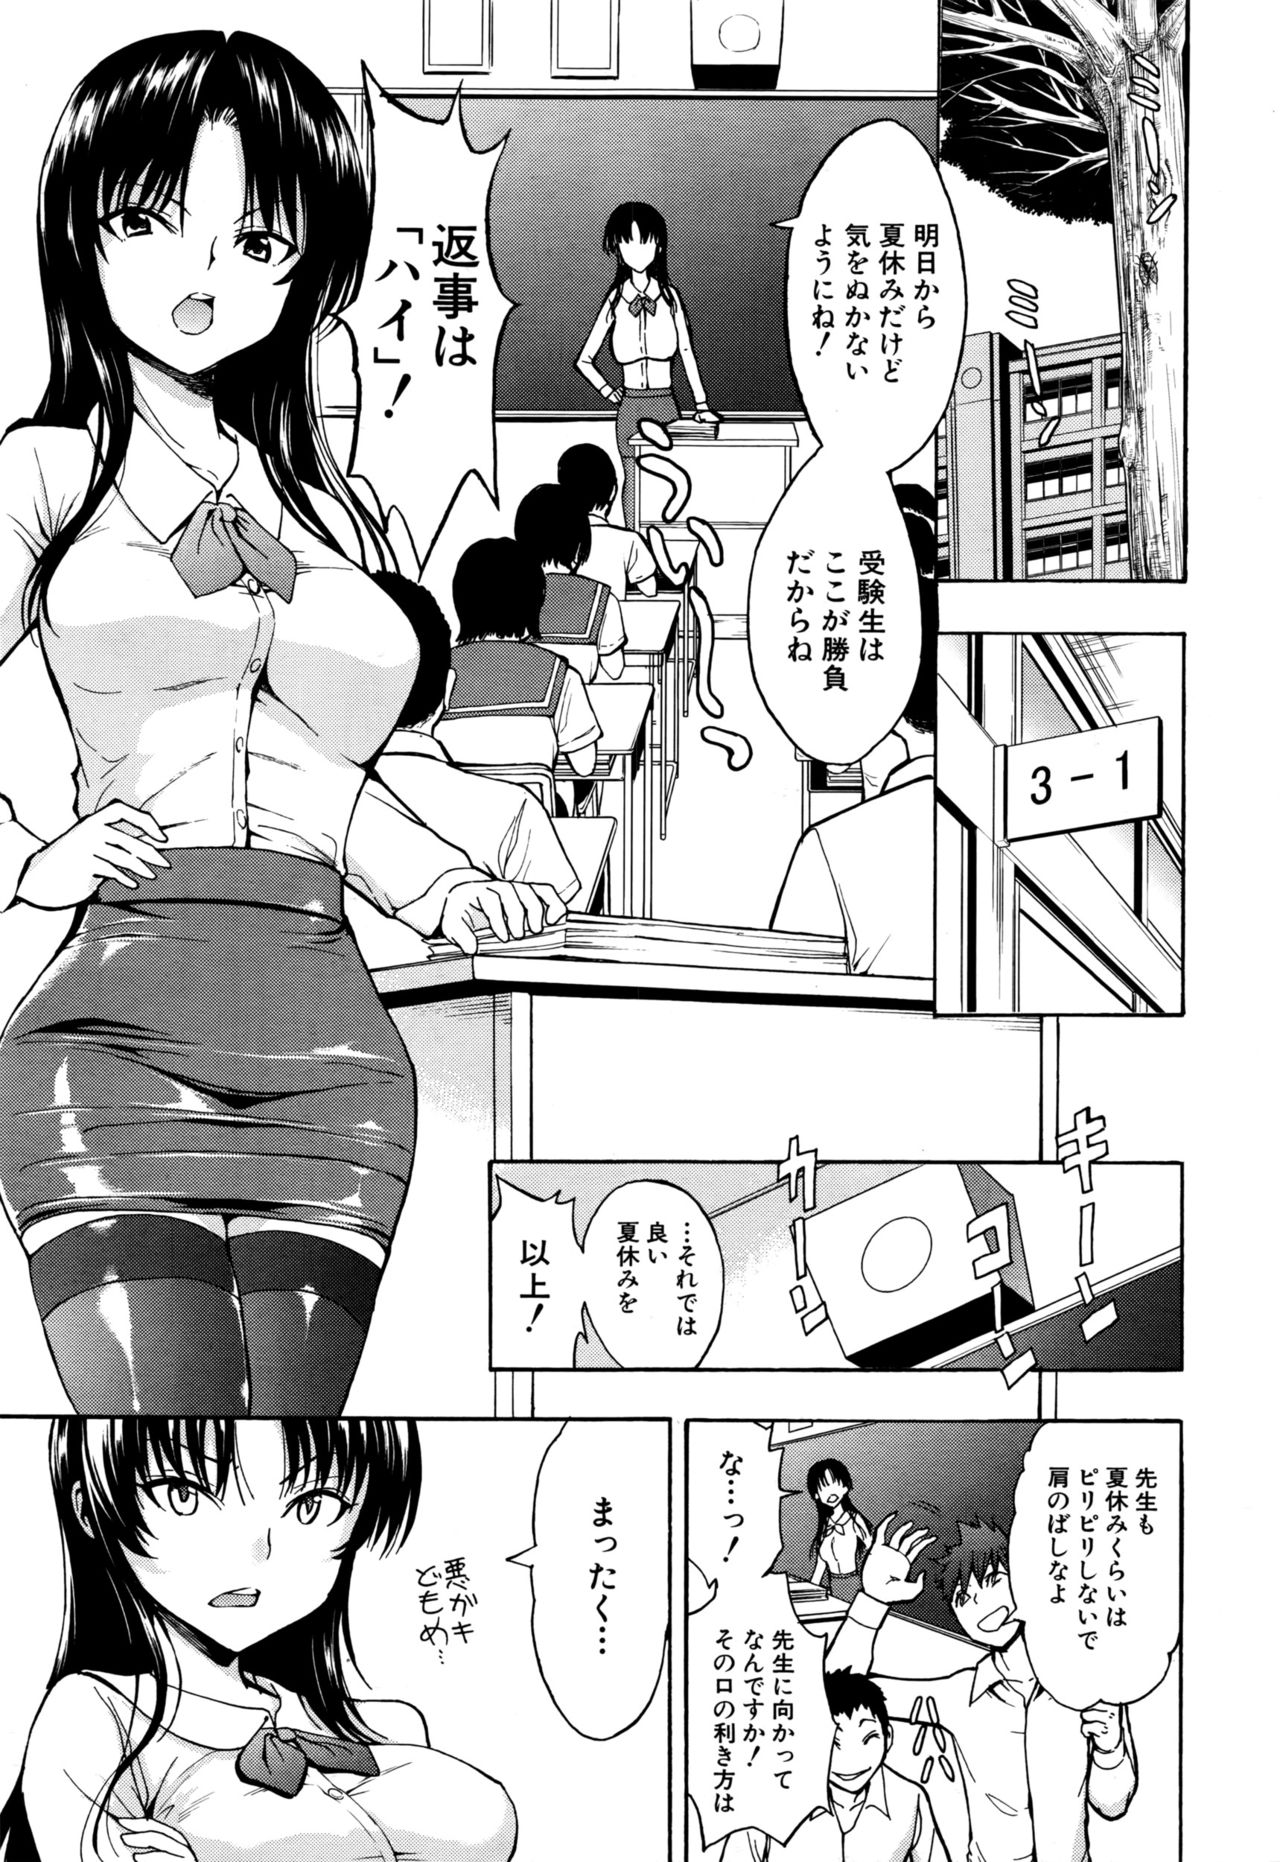 [Hakaba] Ichikawa Miyuki Ch 1-4 page 1 full